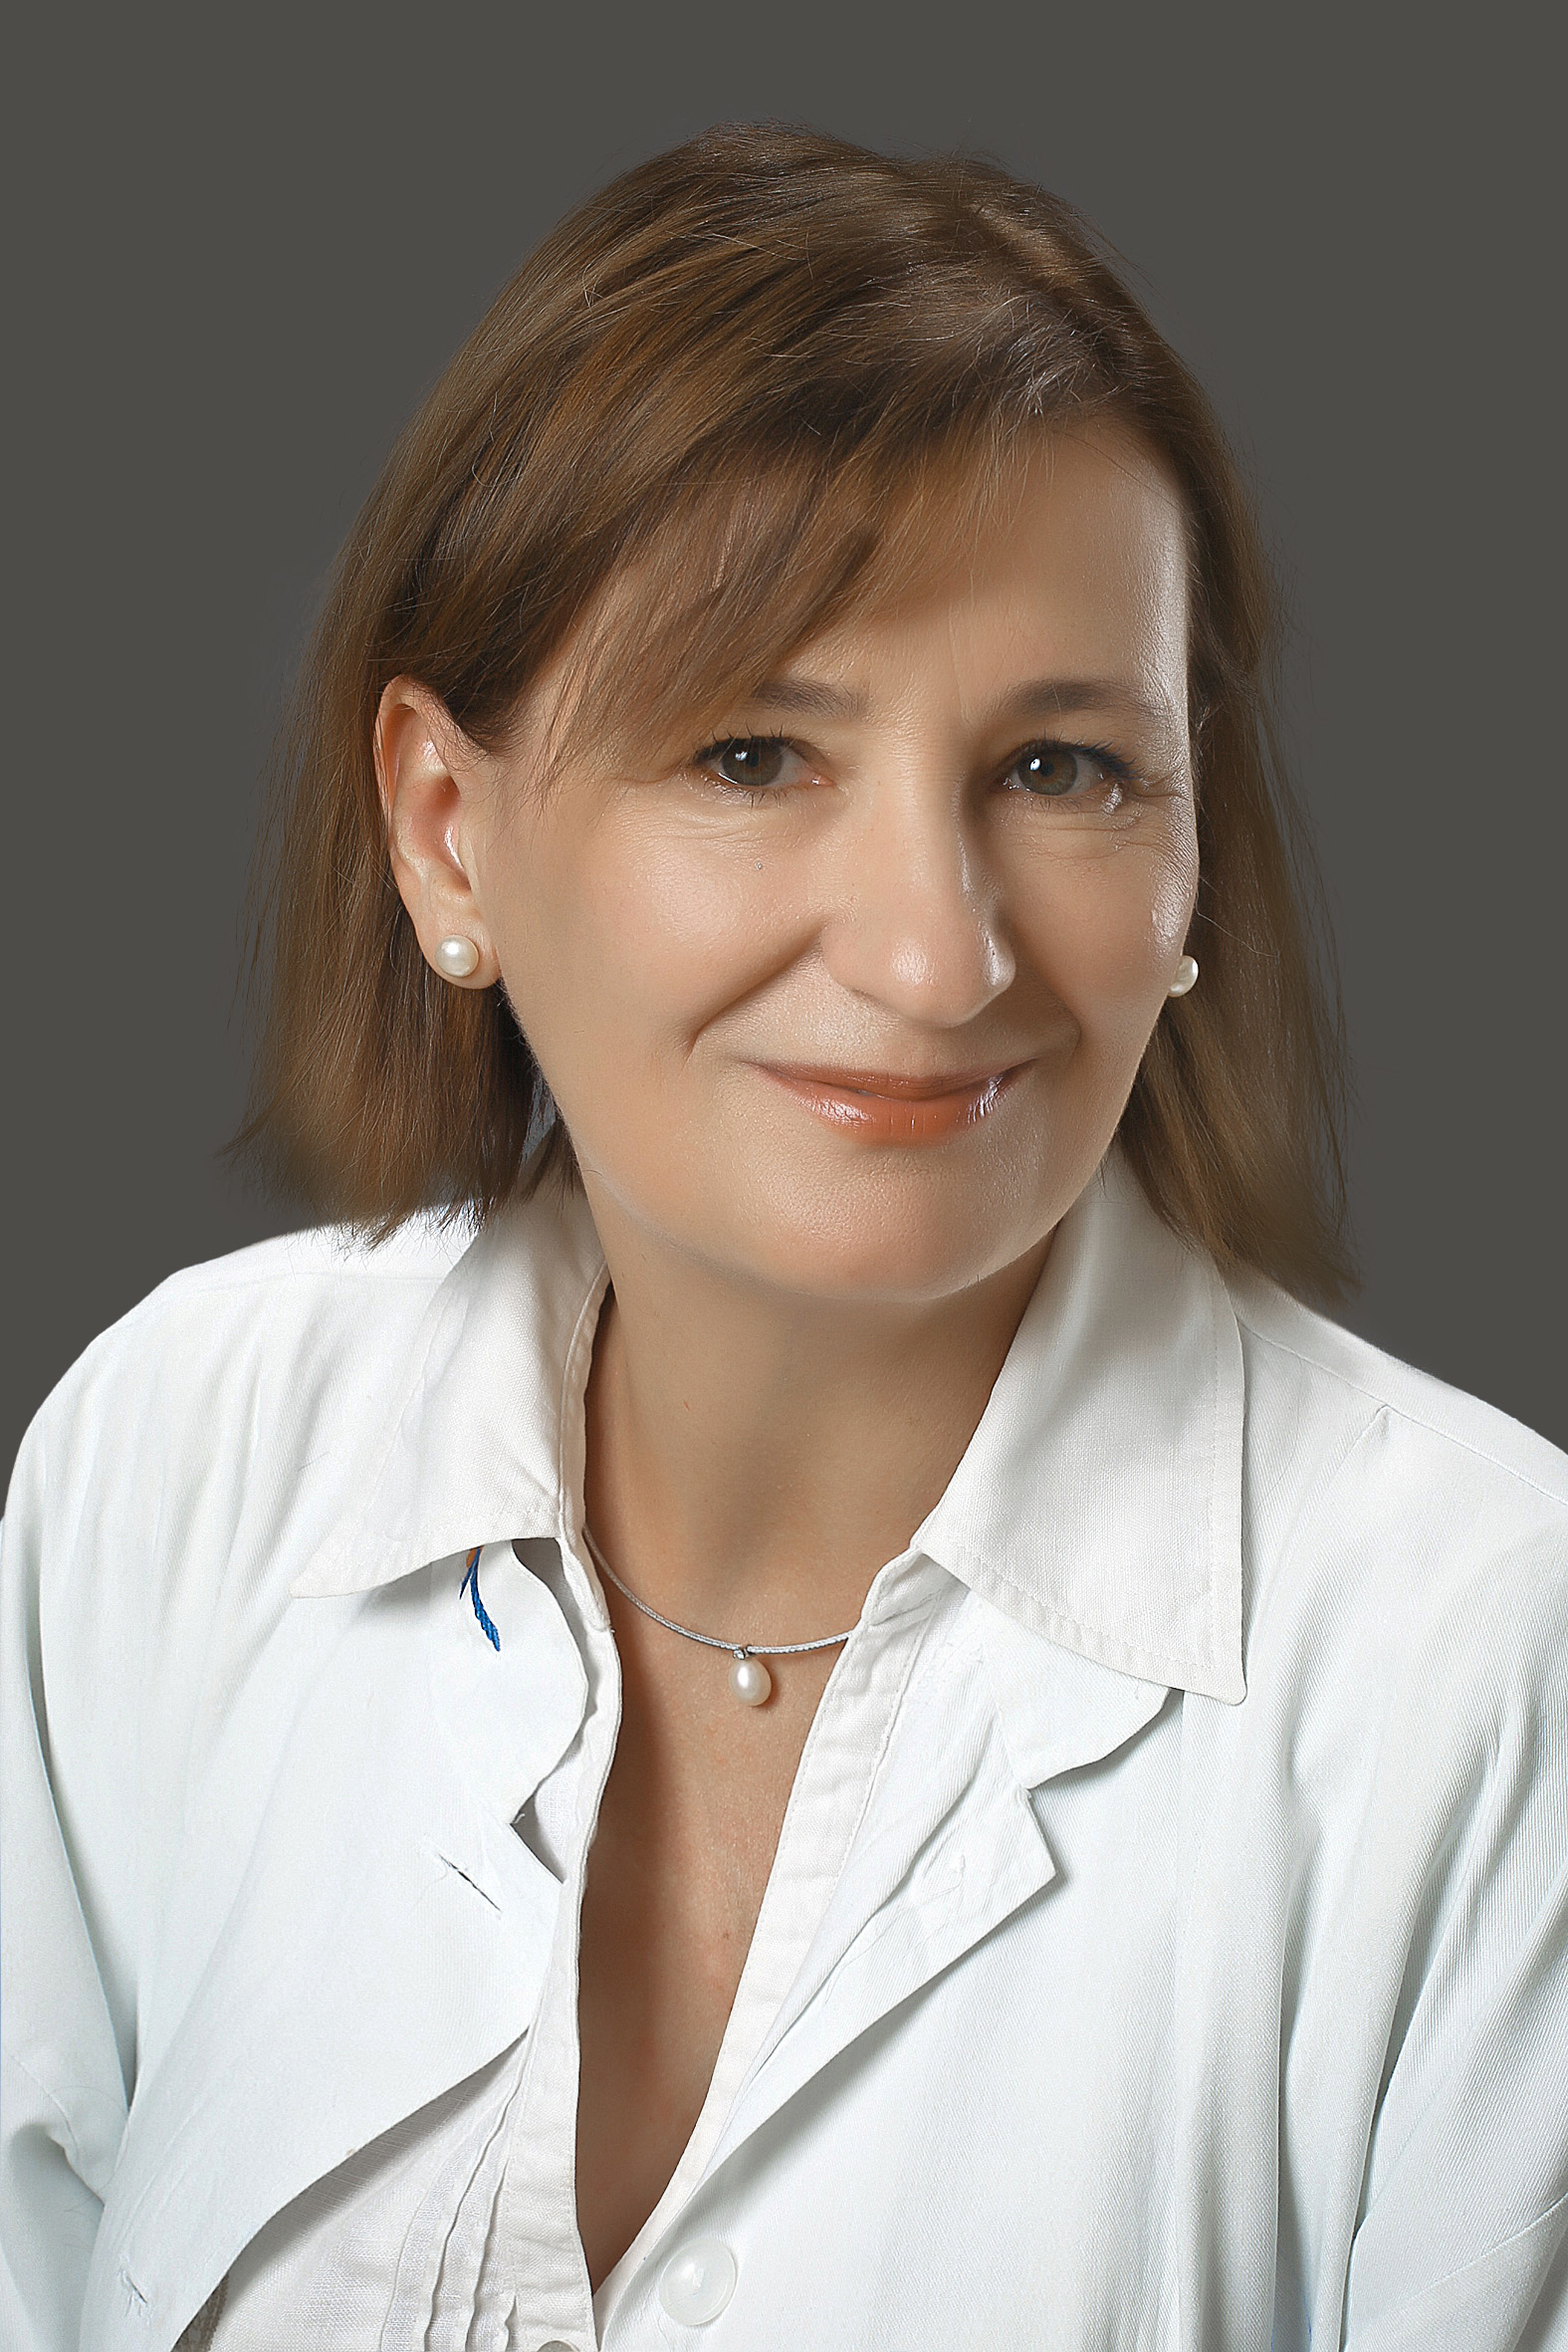  Kocsis Judit, dr. PhD a Budai Egészségközpont onkológus szakorvosa